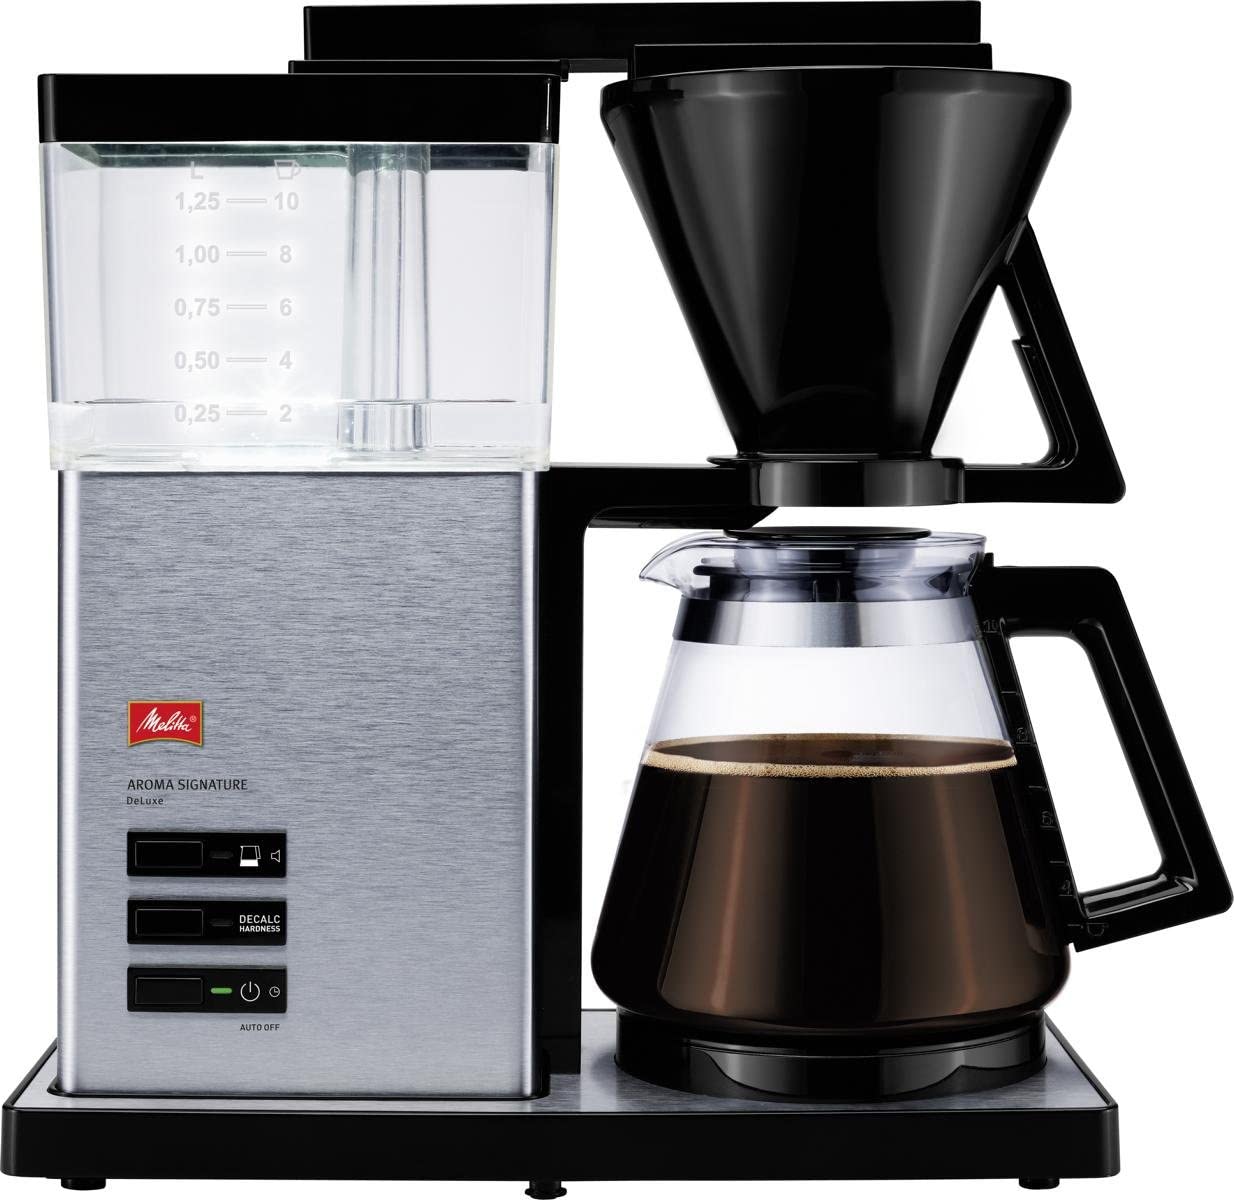 Melitta 100702 Aroma Signature De Luxe Kaffeefiltermaschine-Aromaschalter / Stainless Steel chrom - Edelstahl hochglanz